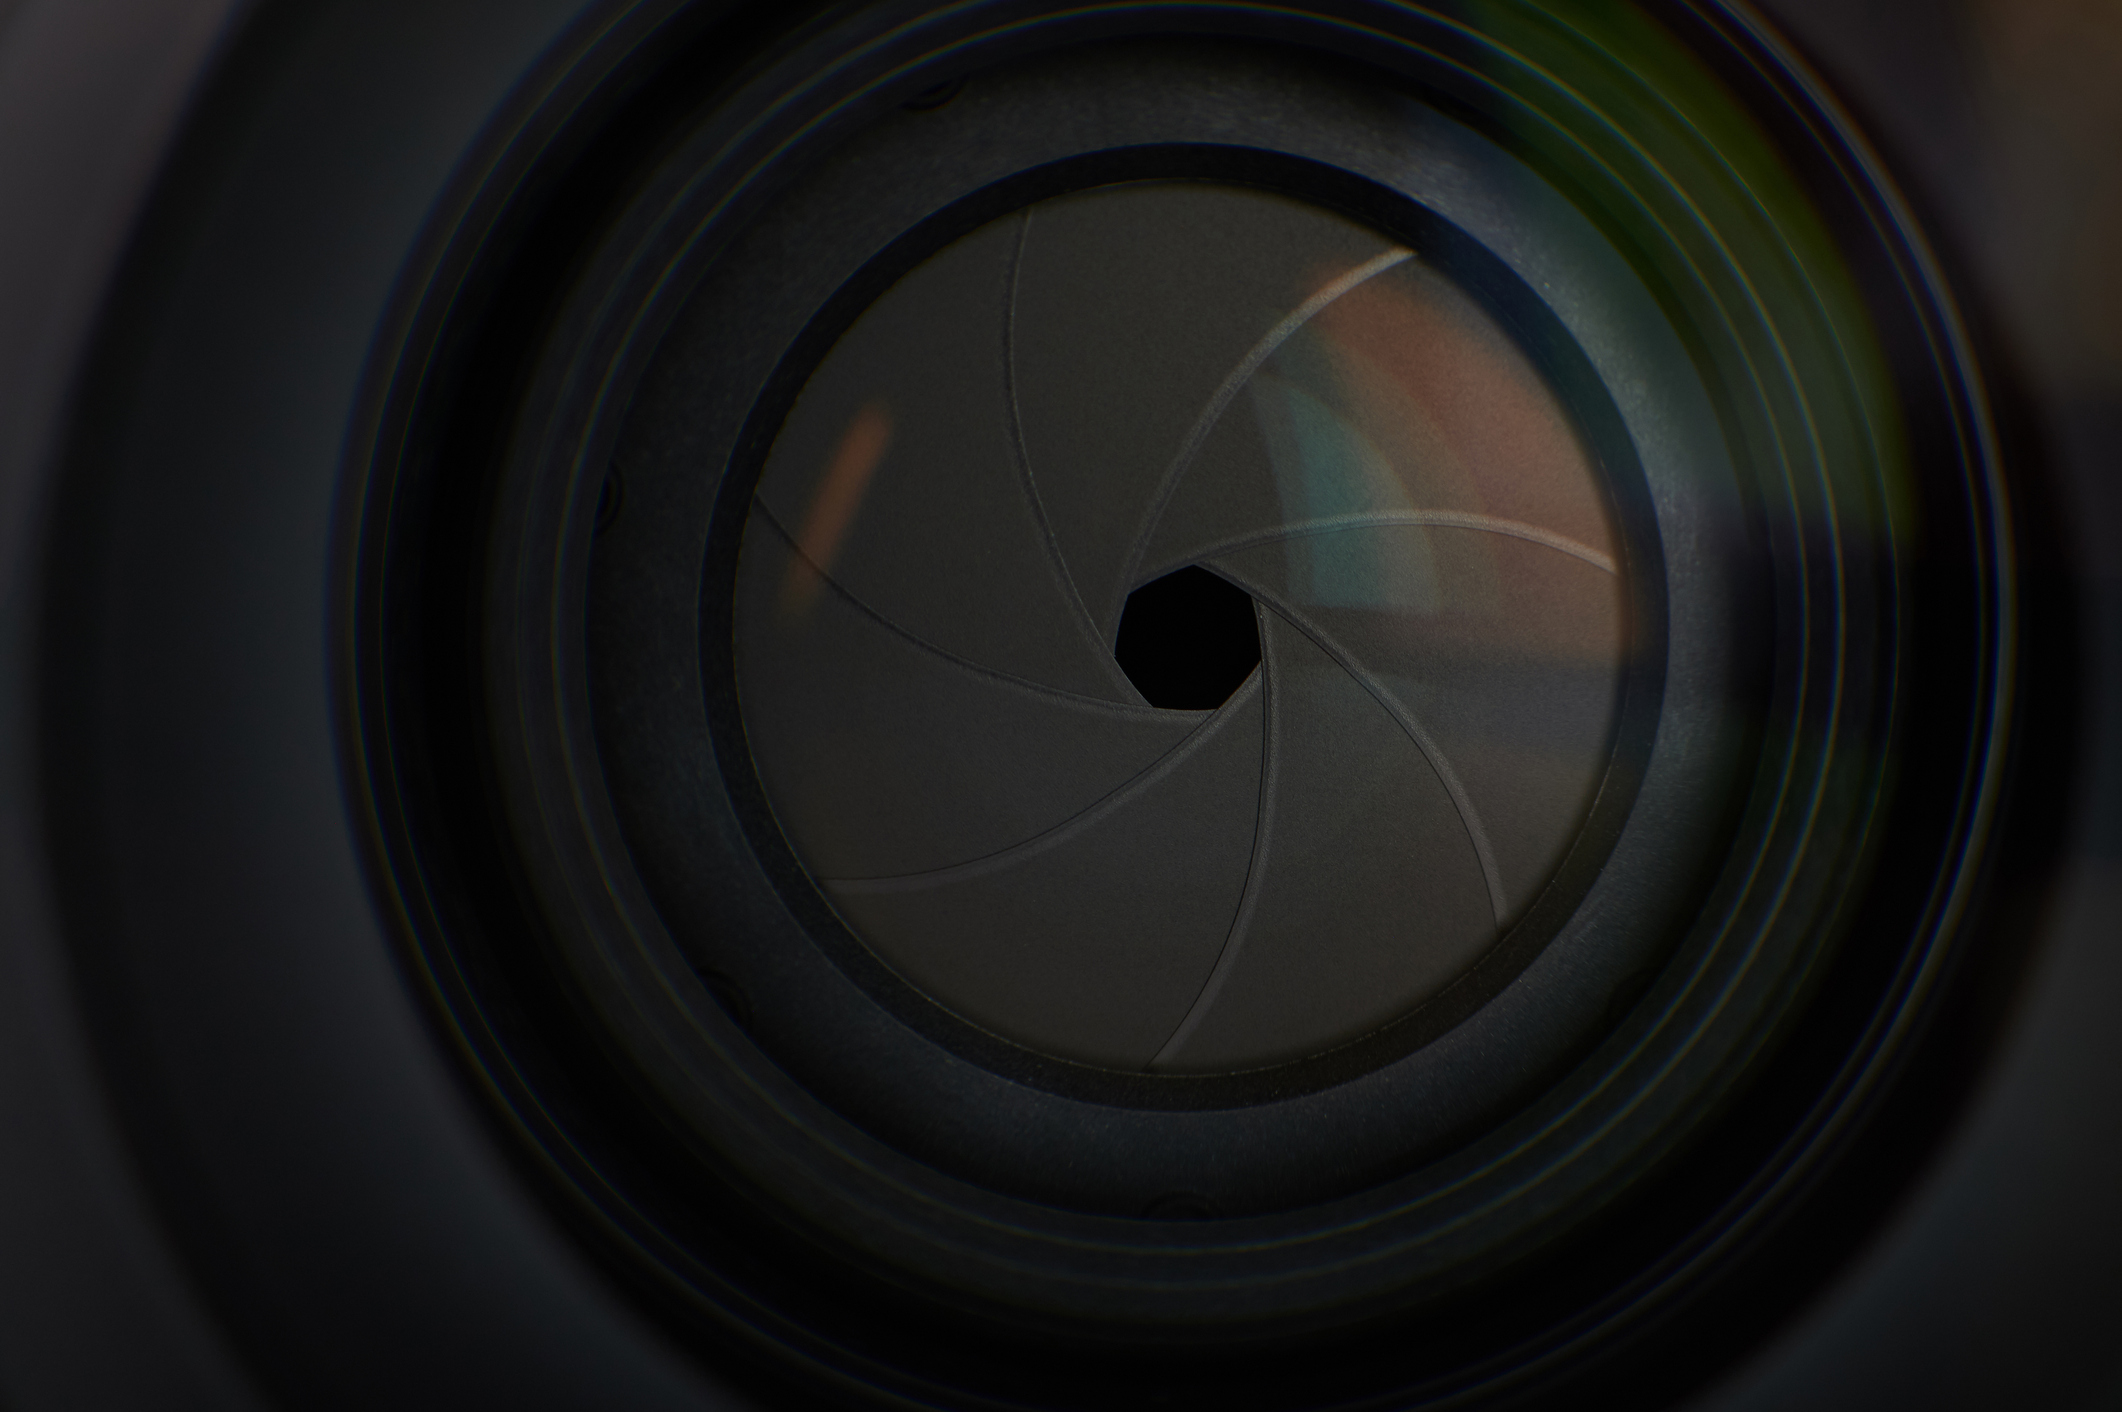 Lens aperture hole